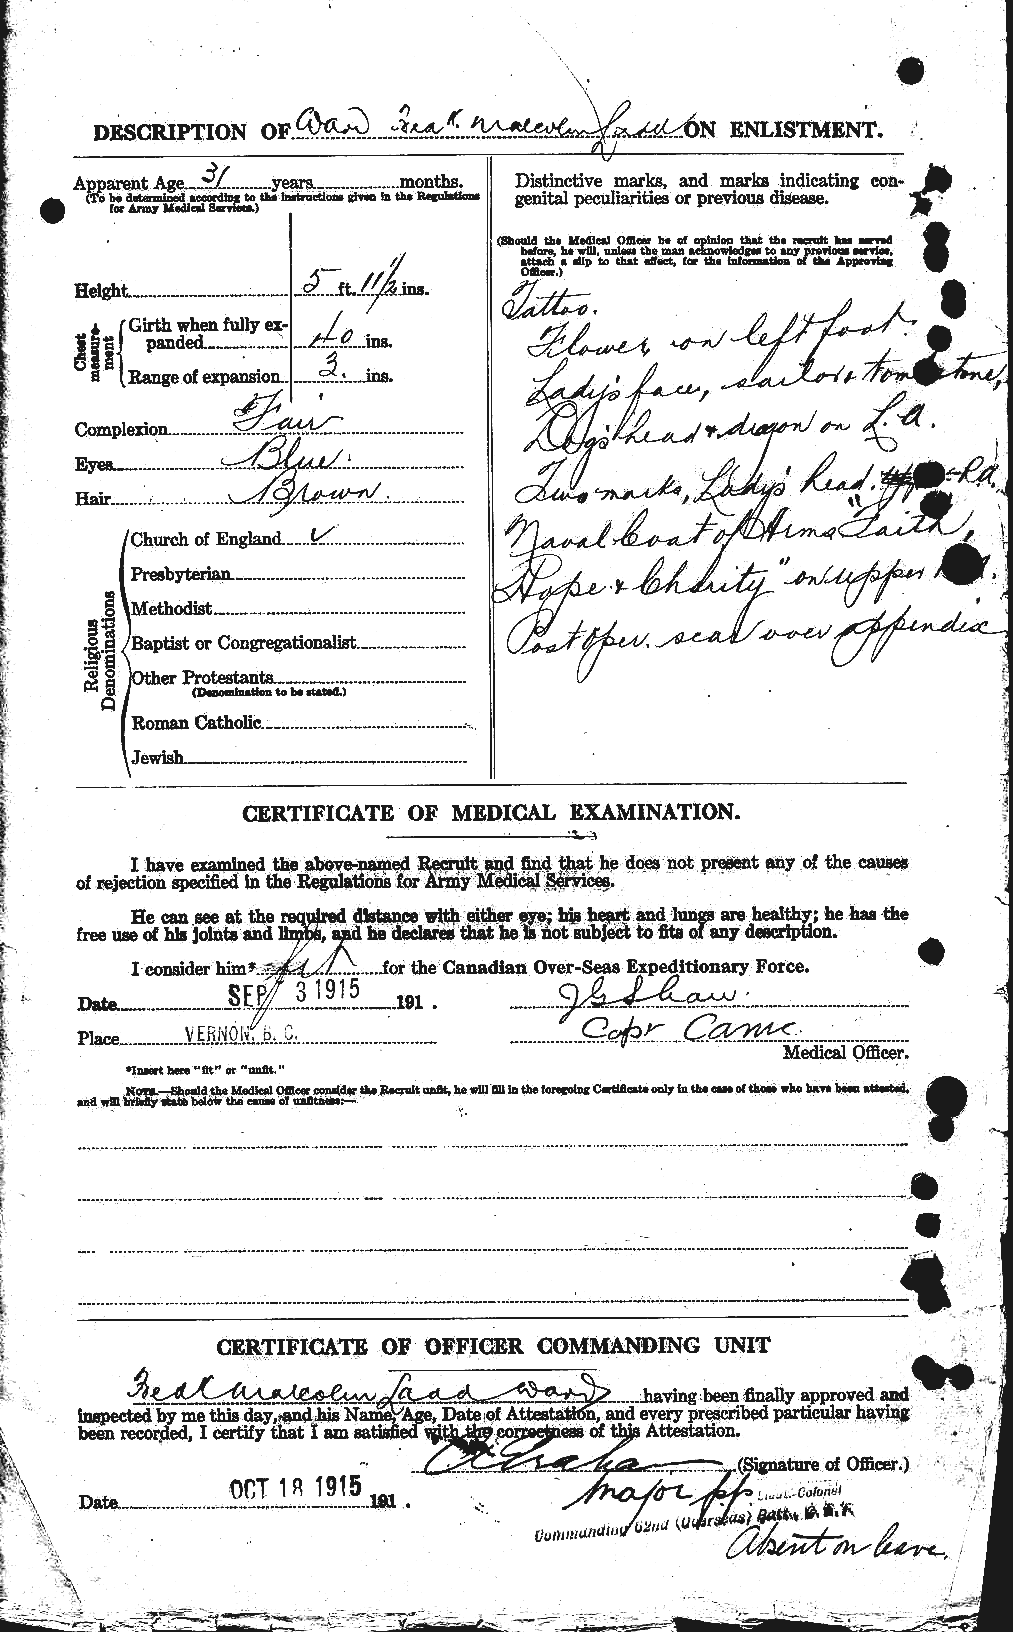 Dossiers du Personnel de la Première Guerre mondiale - CEC 657728b